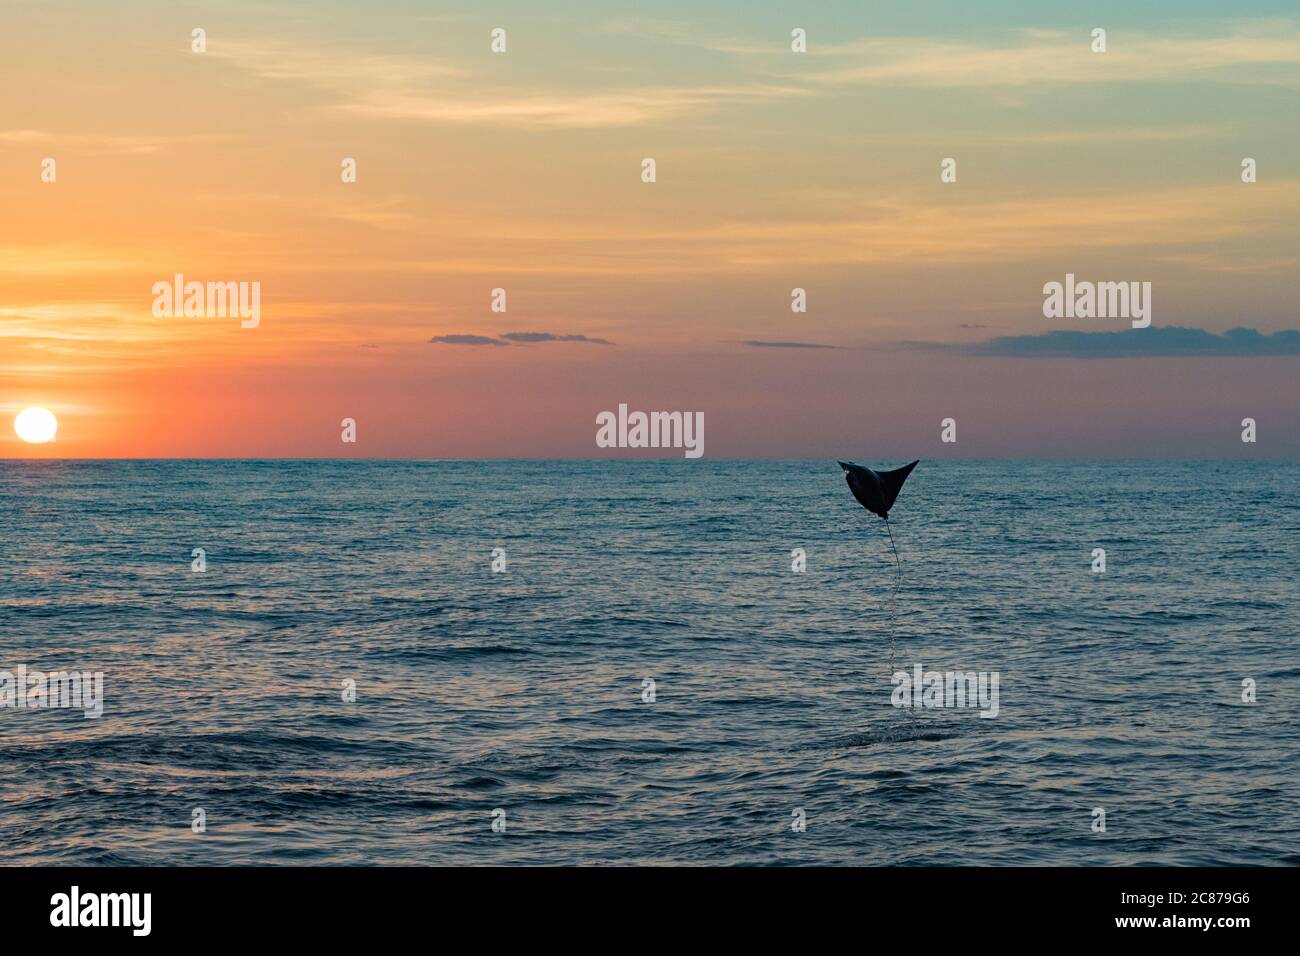 Mobula ray ou Devil ray, Mobula sp., sautant dans l'air au coucher du soleil, au large du sud du Costa Rica, en Amérique centrale ( Océan Pacifique oriental ) Banque D'Images